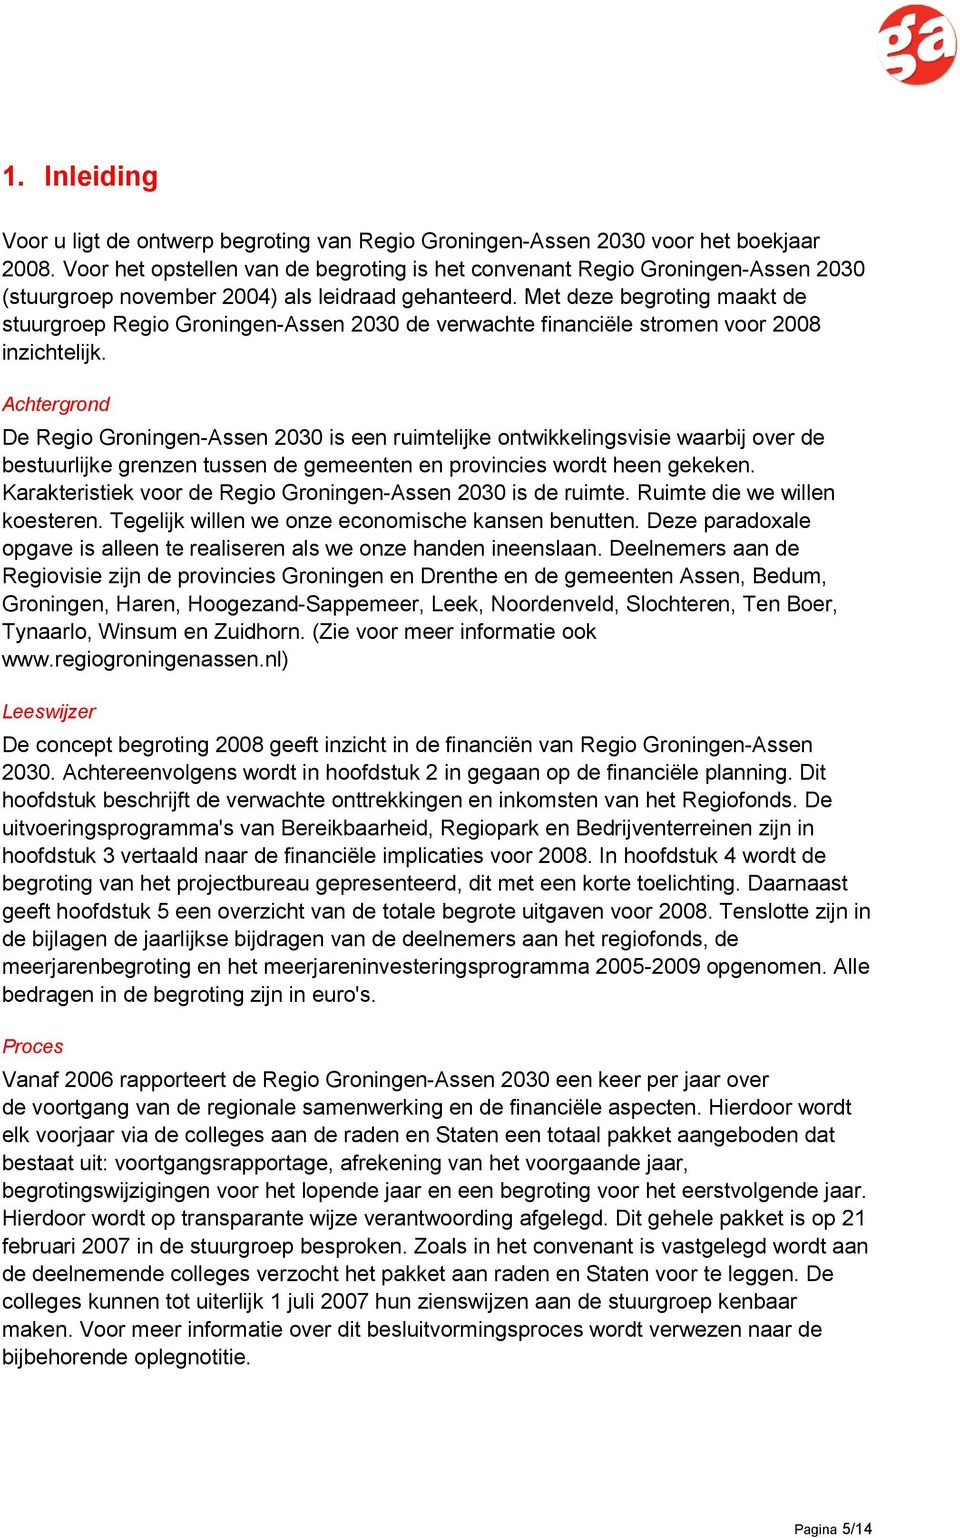 Met deze begroting maakt de stuurgroep Regio Groningen-Assen 2030 de verwachte financiële stromen voor 2008 inzichtelijk.